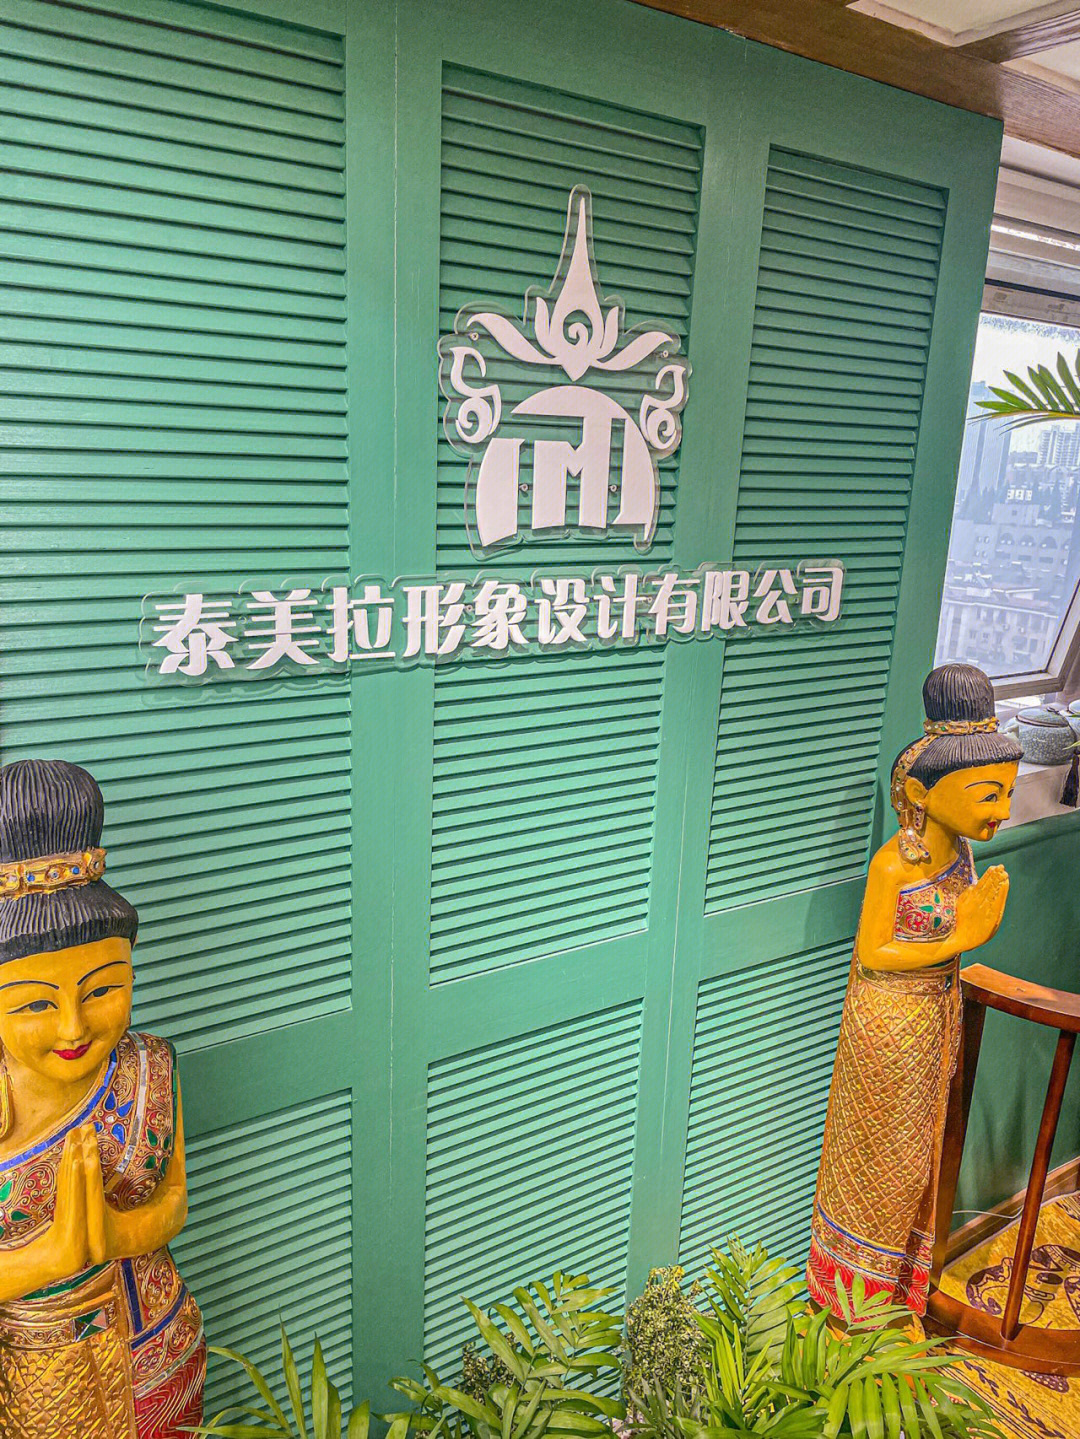 南京探店丨舒服到睡着的泰式洗头店